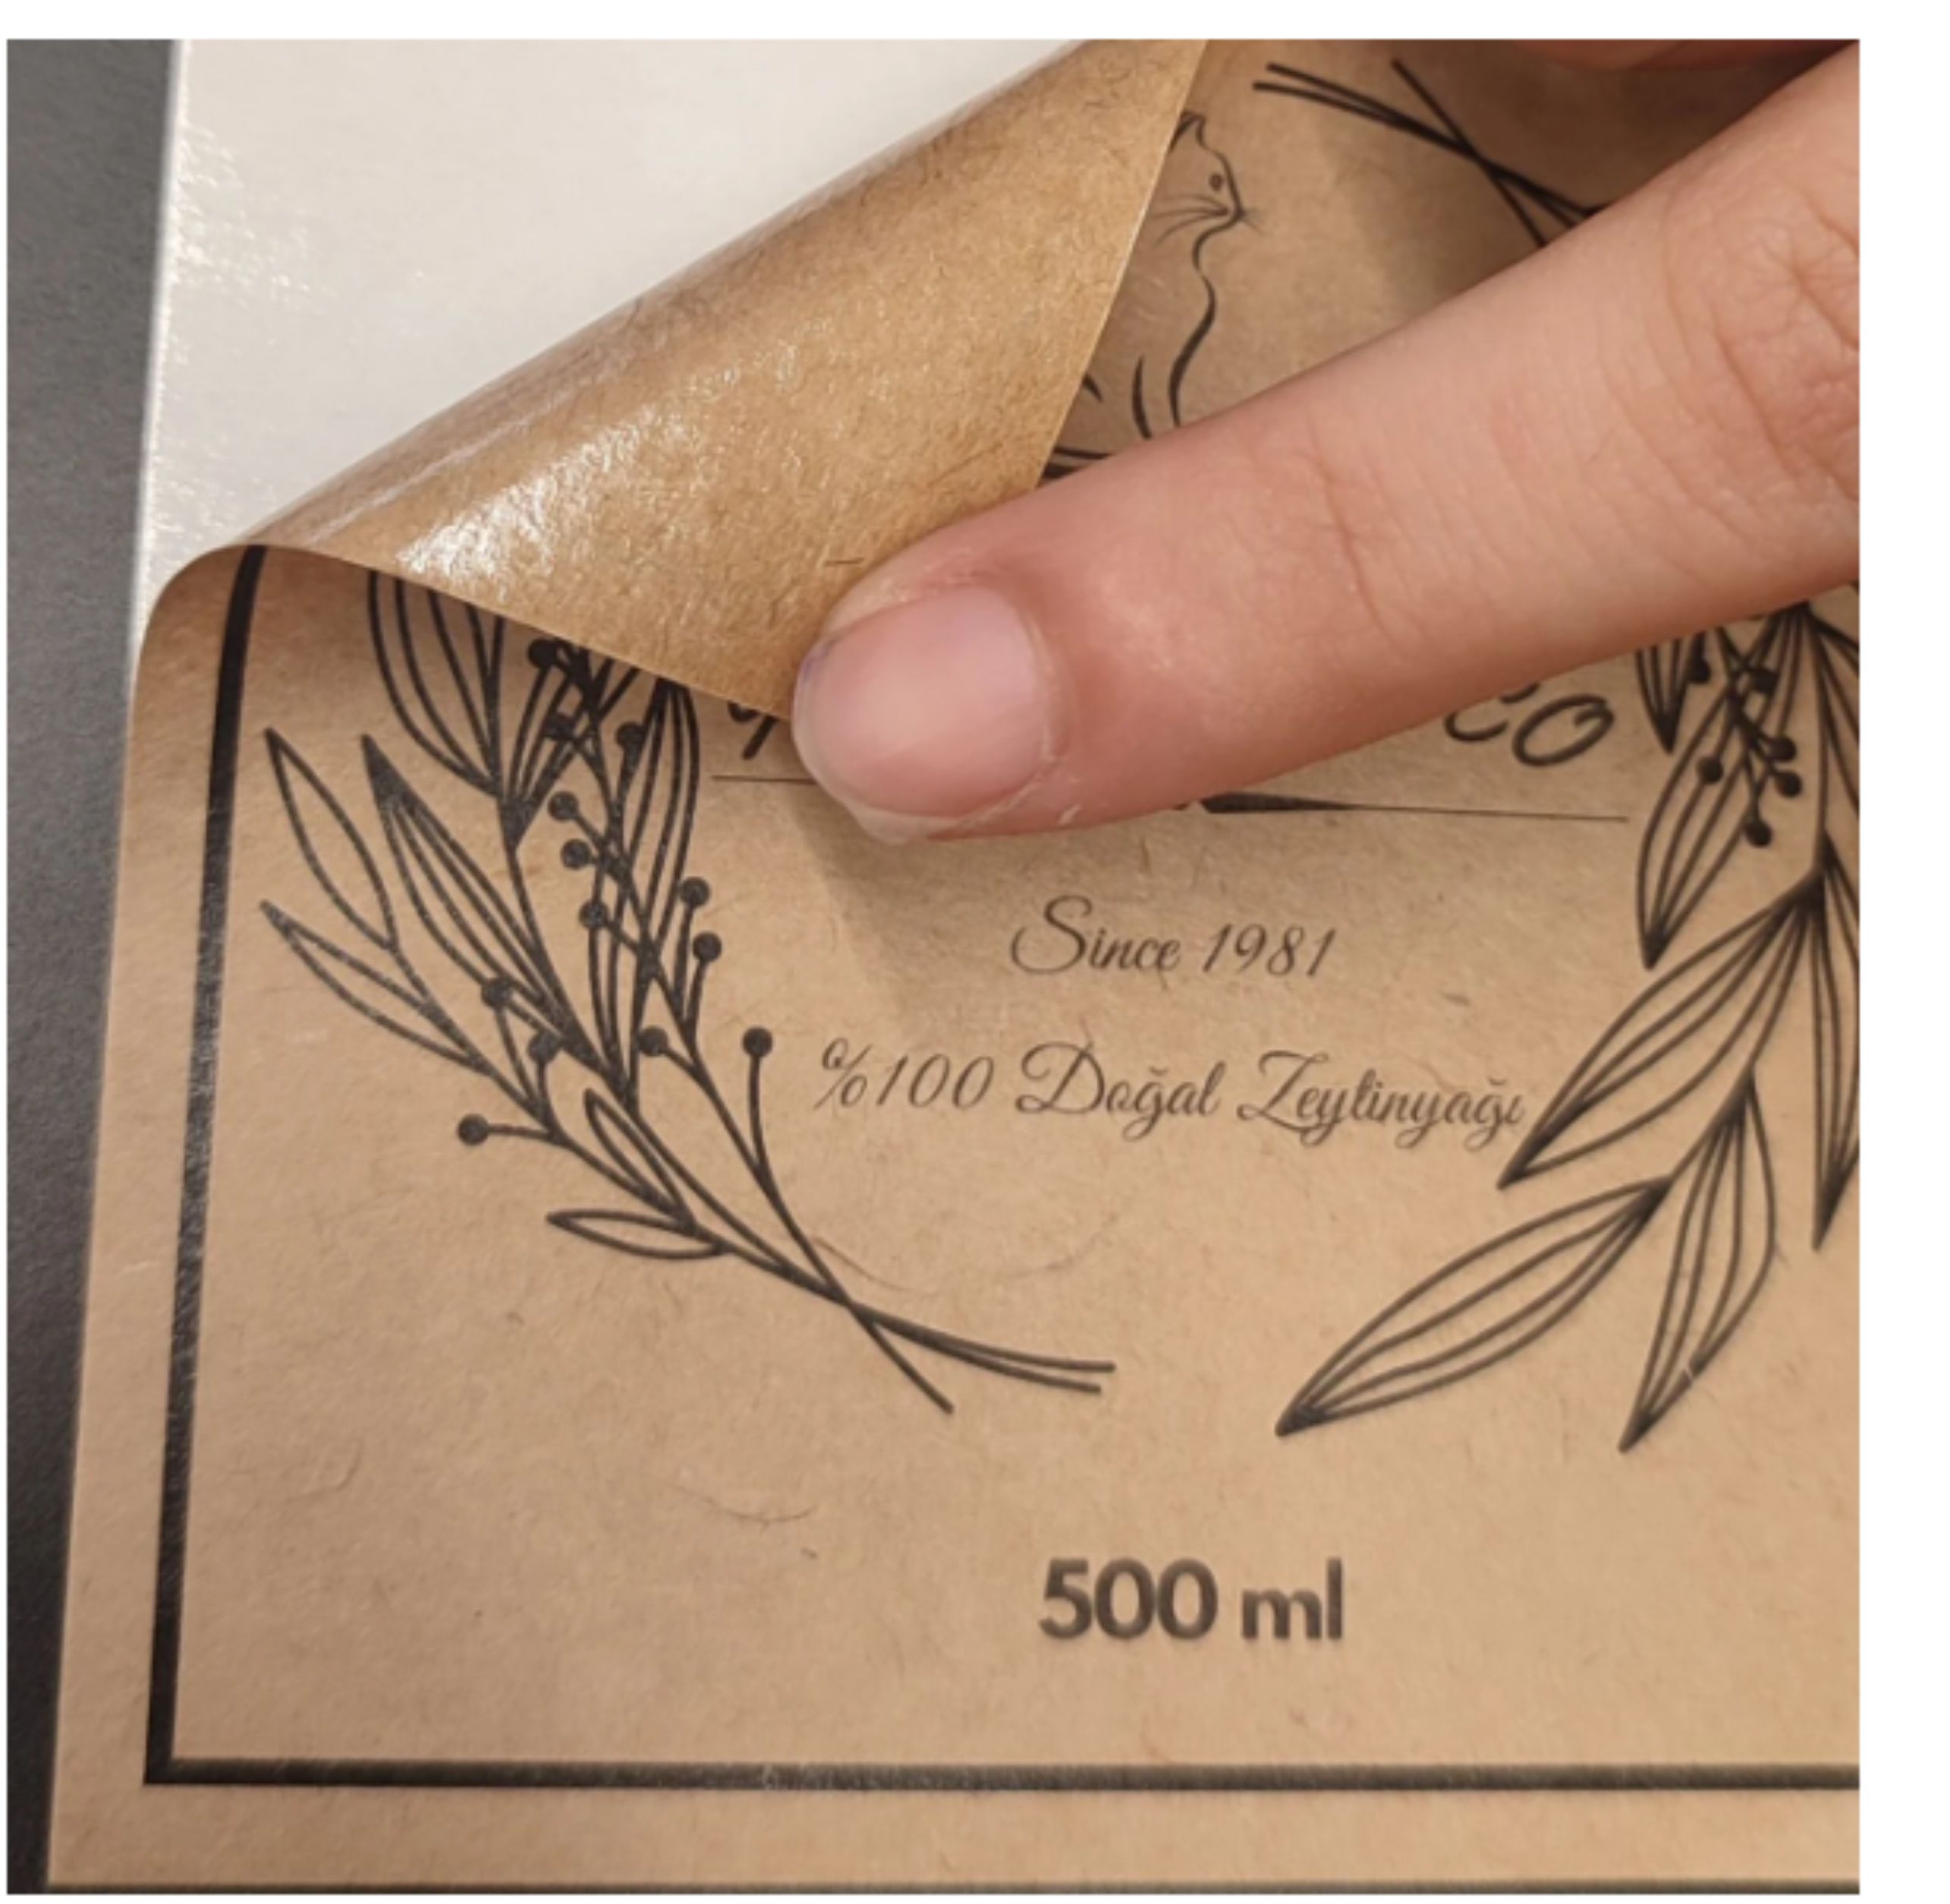 Étiquettes cadeaux-paquet de 100 étiquettes en papier kraft